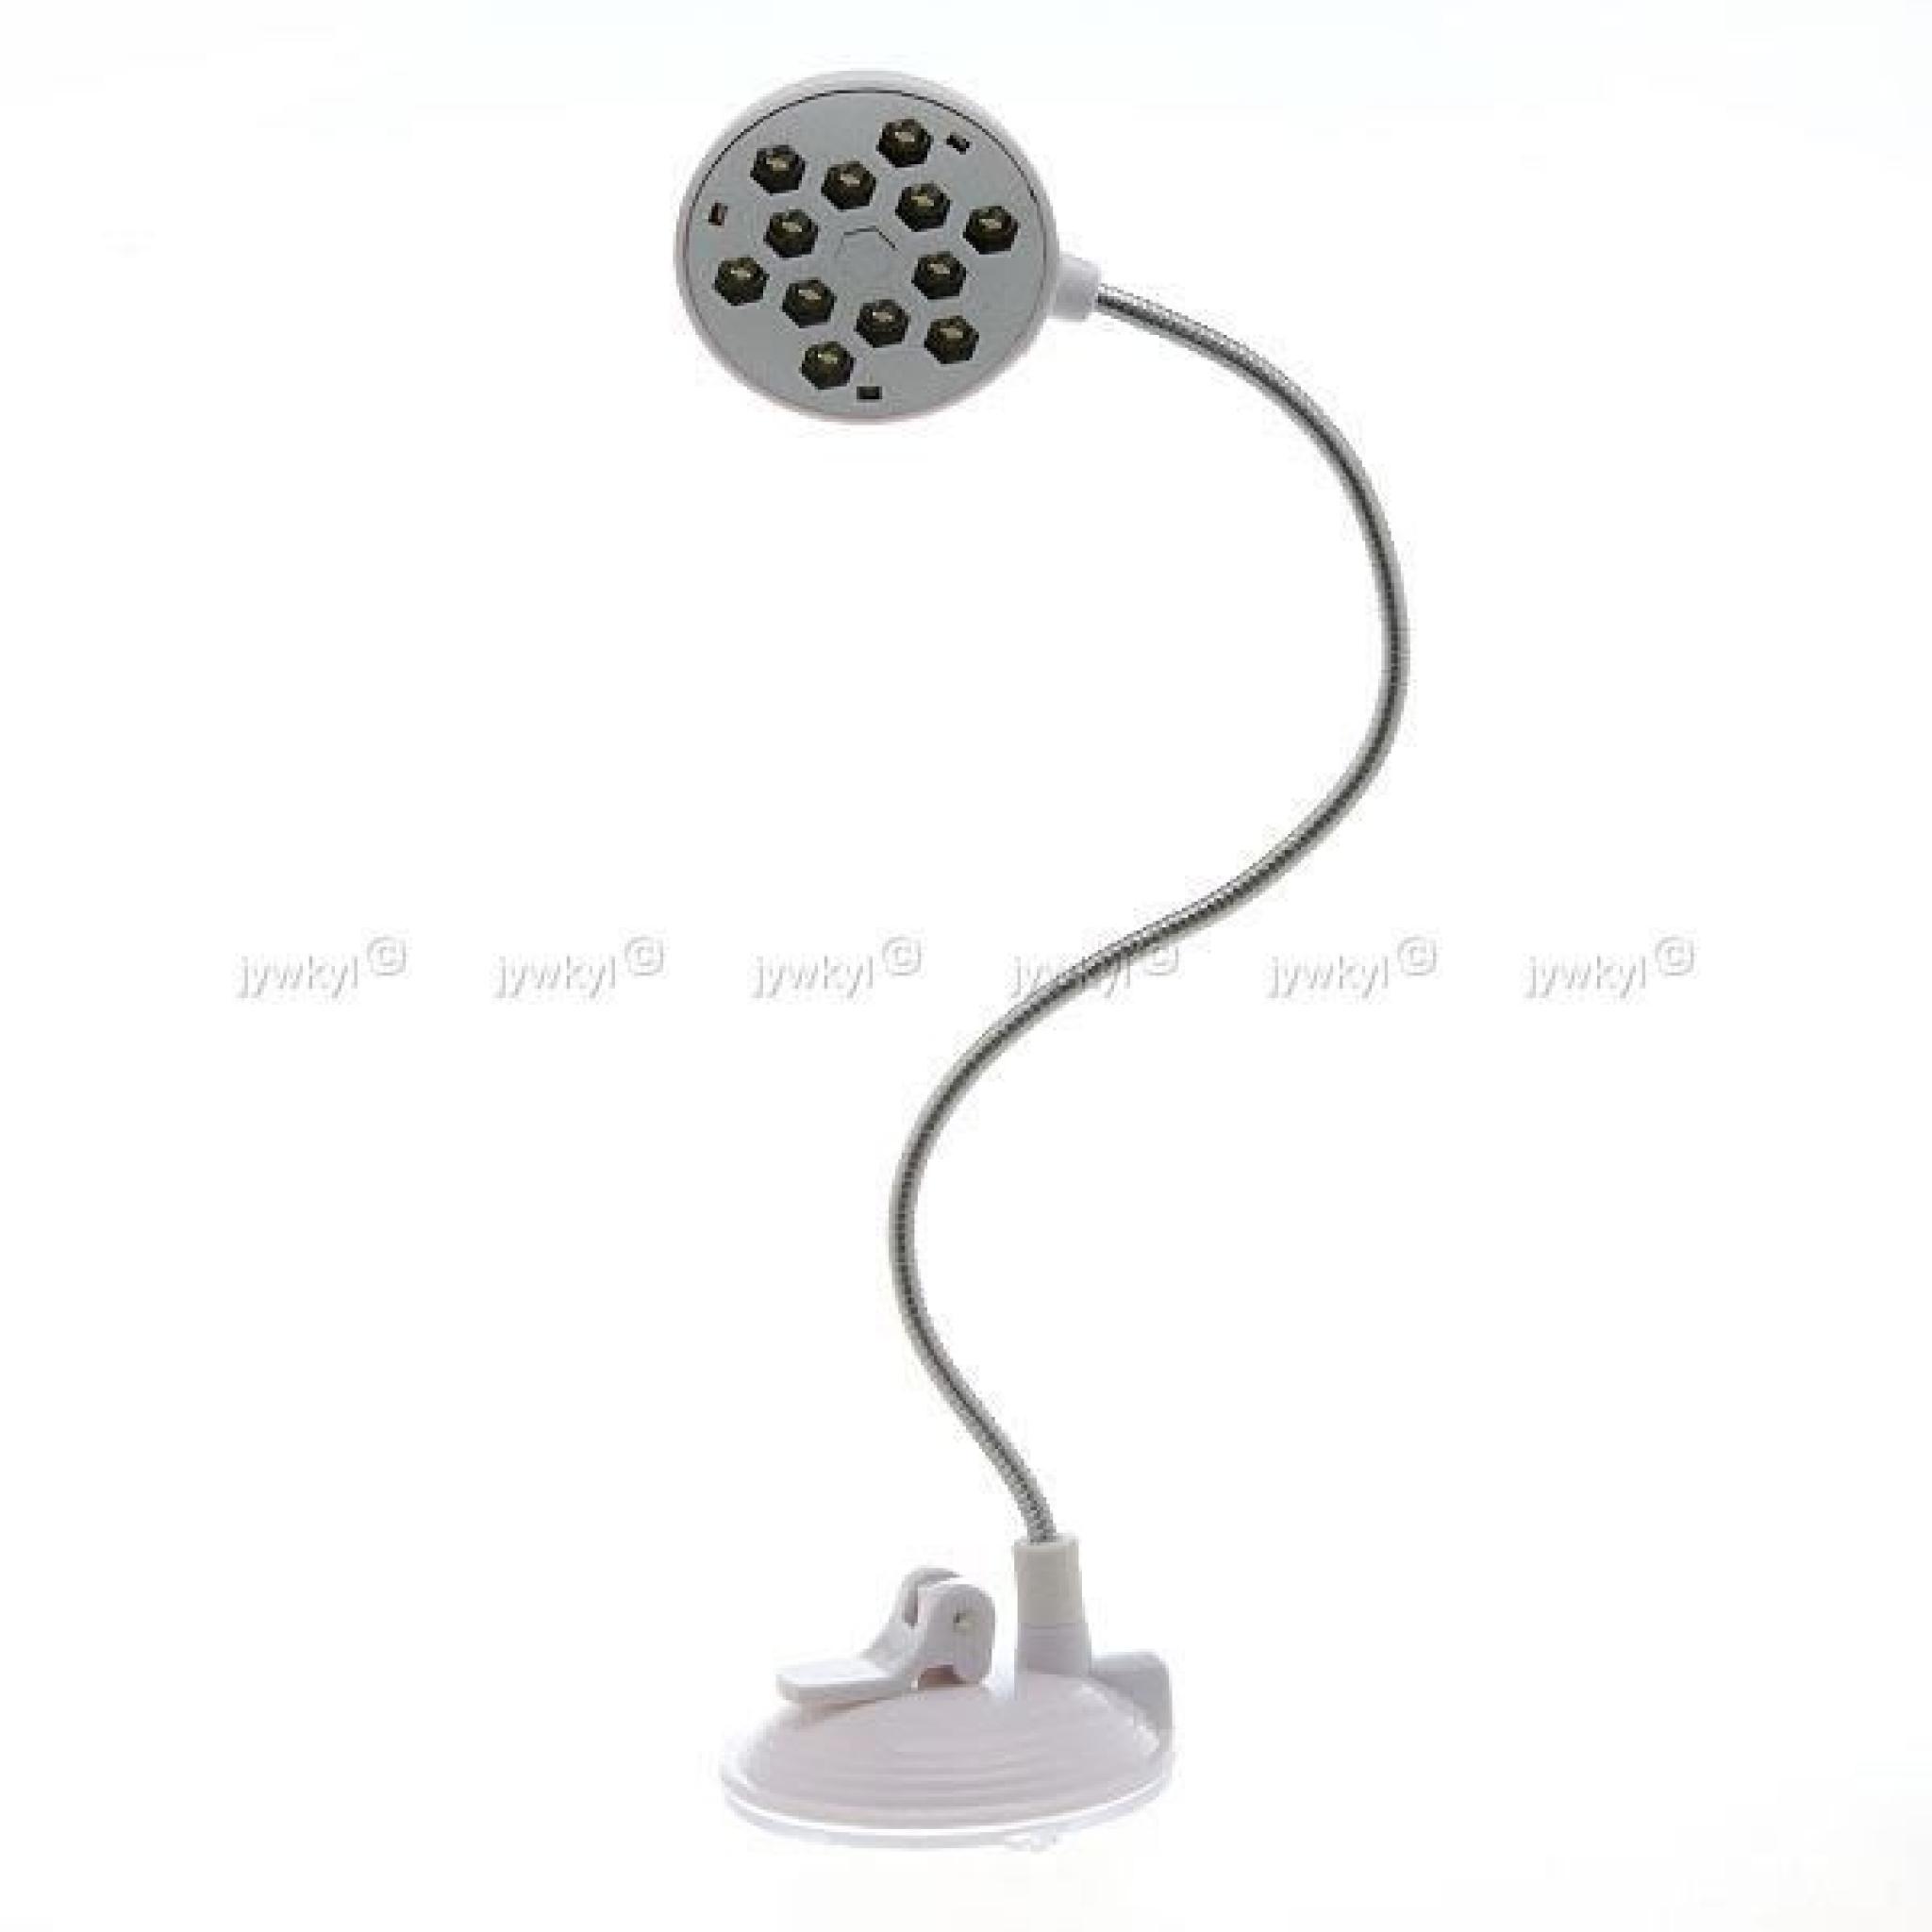 Lampe Ordinateur USB Flexible à 12 Ampoules LED… pas cher